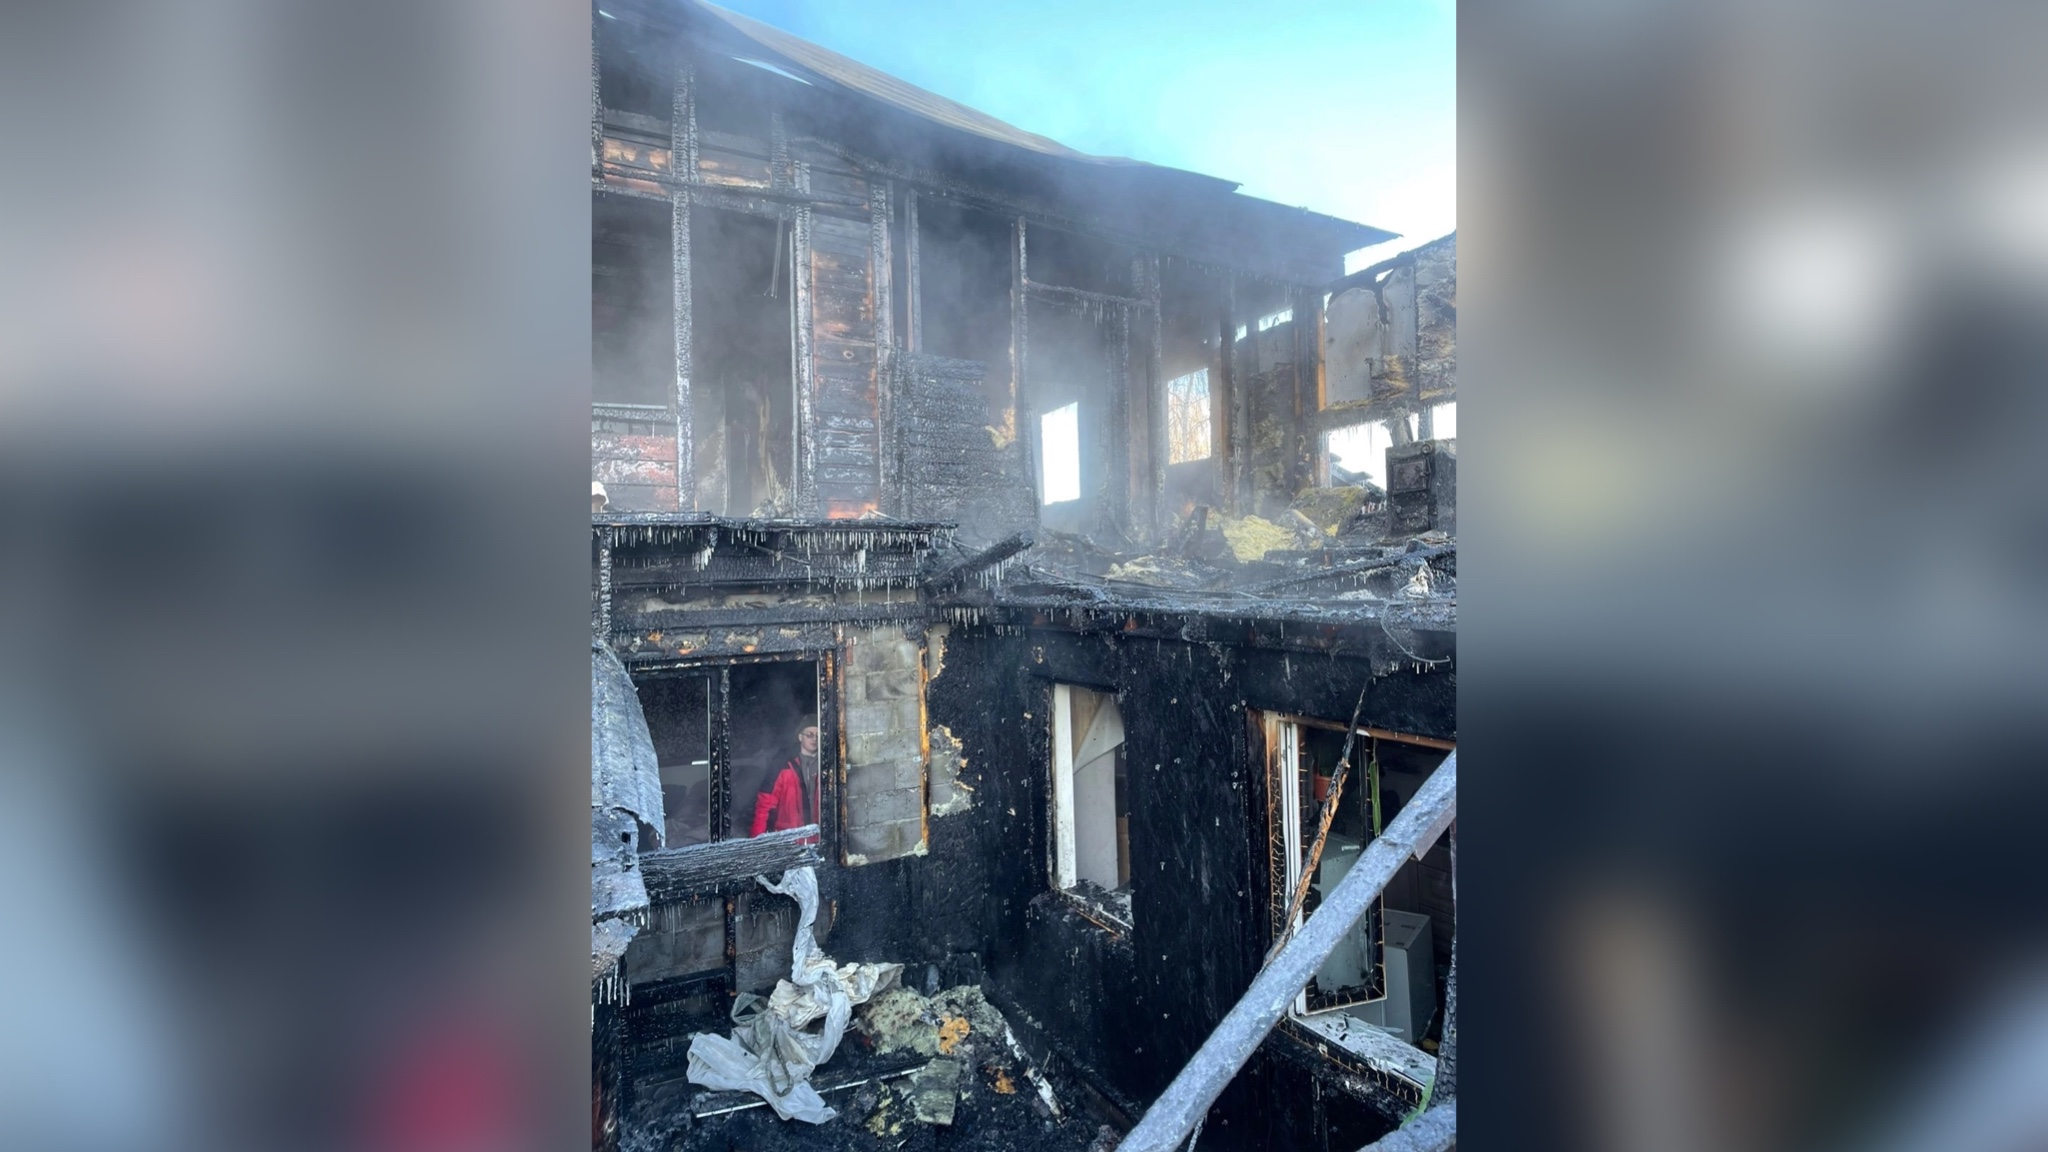 При пожаре в доме в Омске погиб шестилетний мальчик